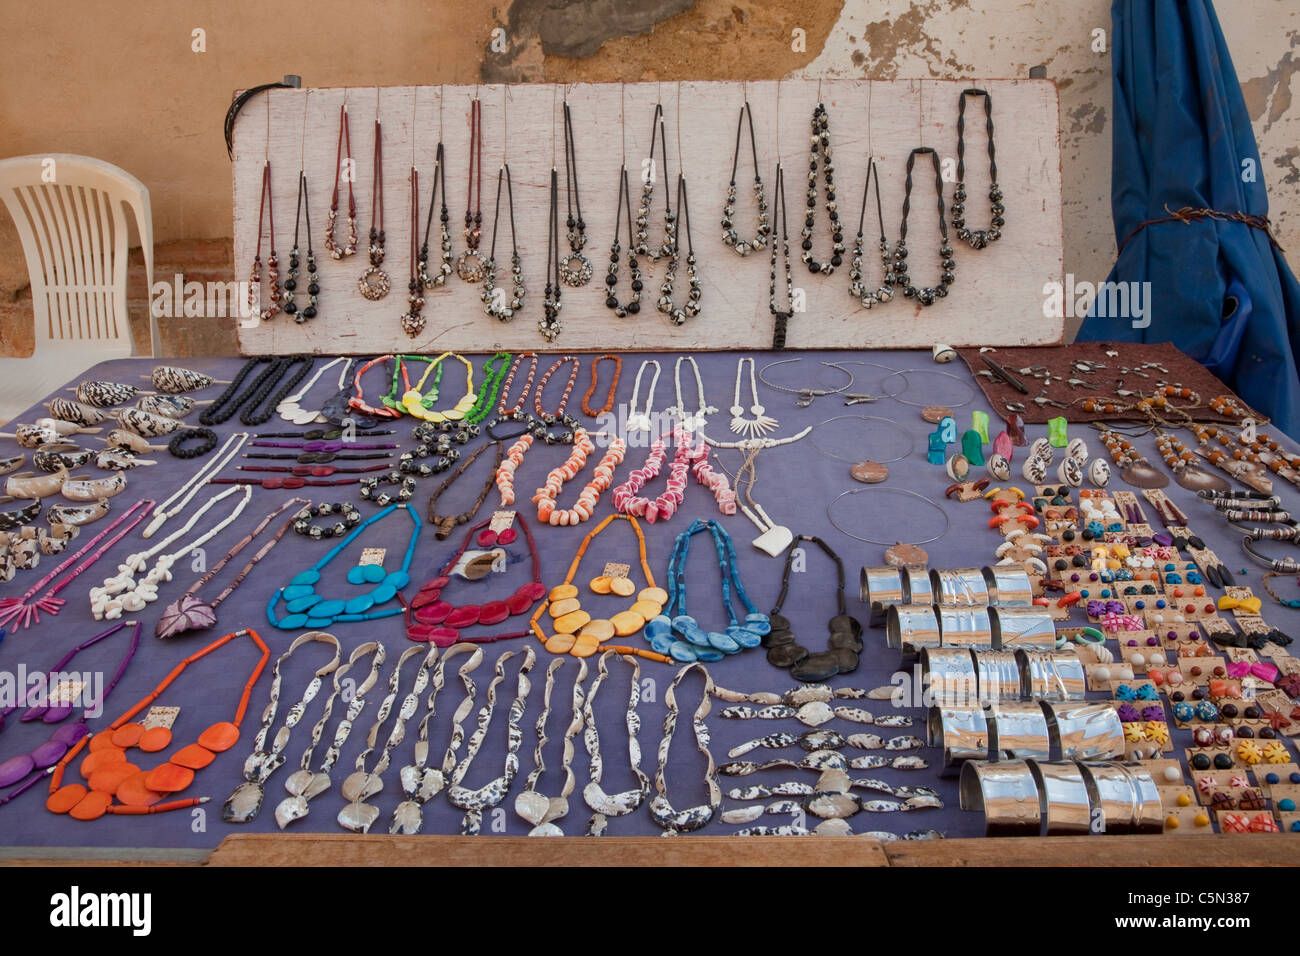 Cuba, Trinidad. Bijoux et artisanat, marché de souvenirs pour touristes. Banque D'Images